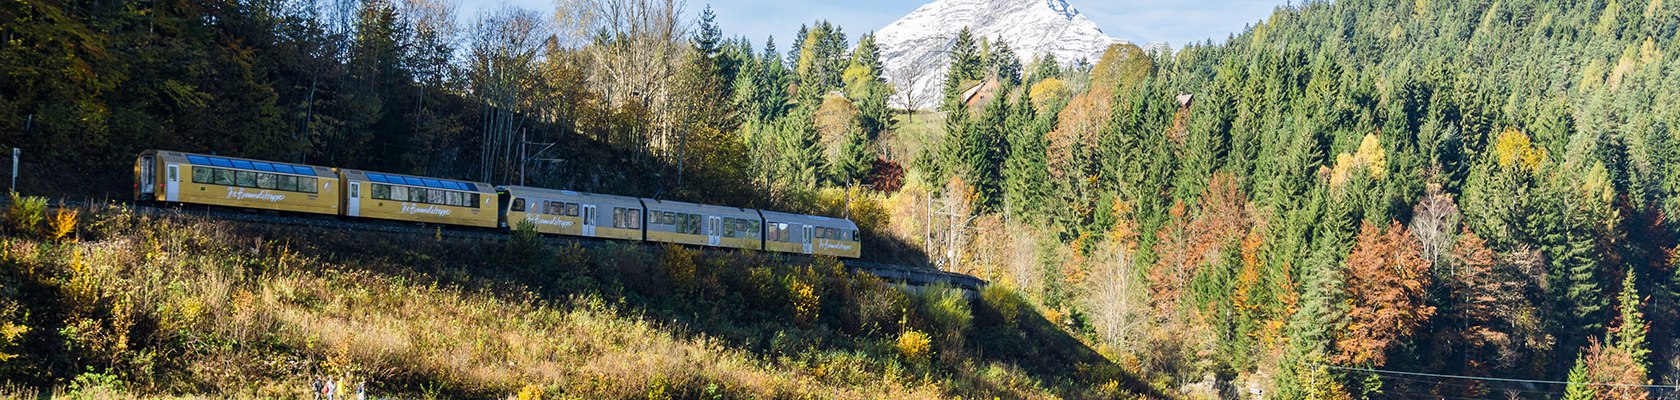 Mariazellerbahn fährt durch Landschaft hinter ihr ist ein Berg zu sehen